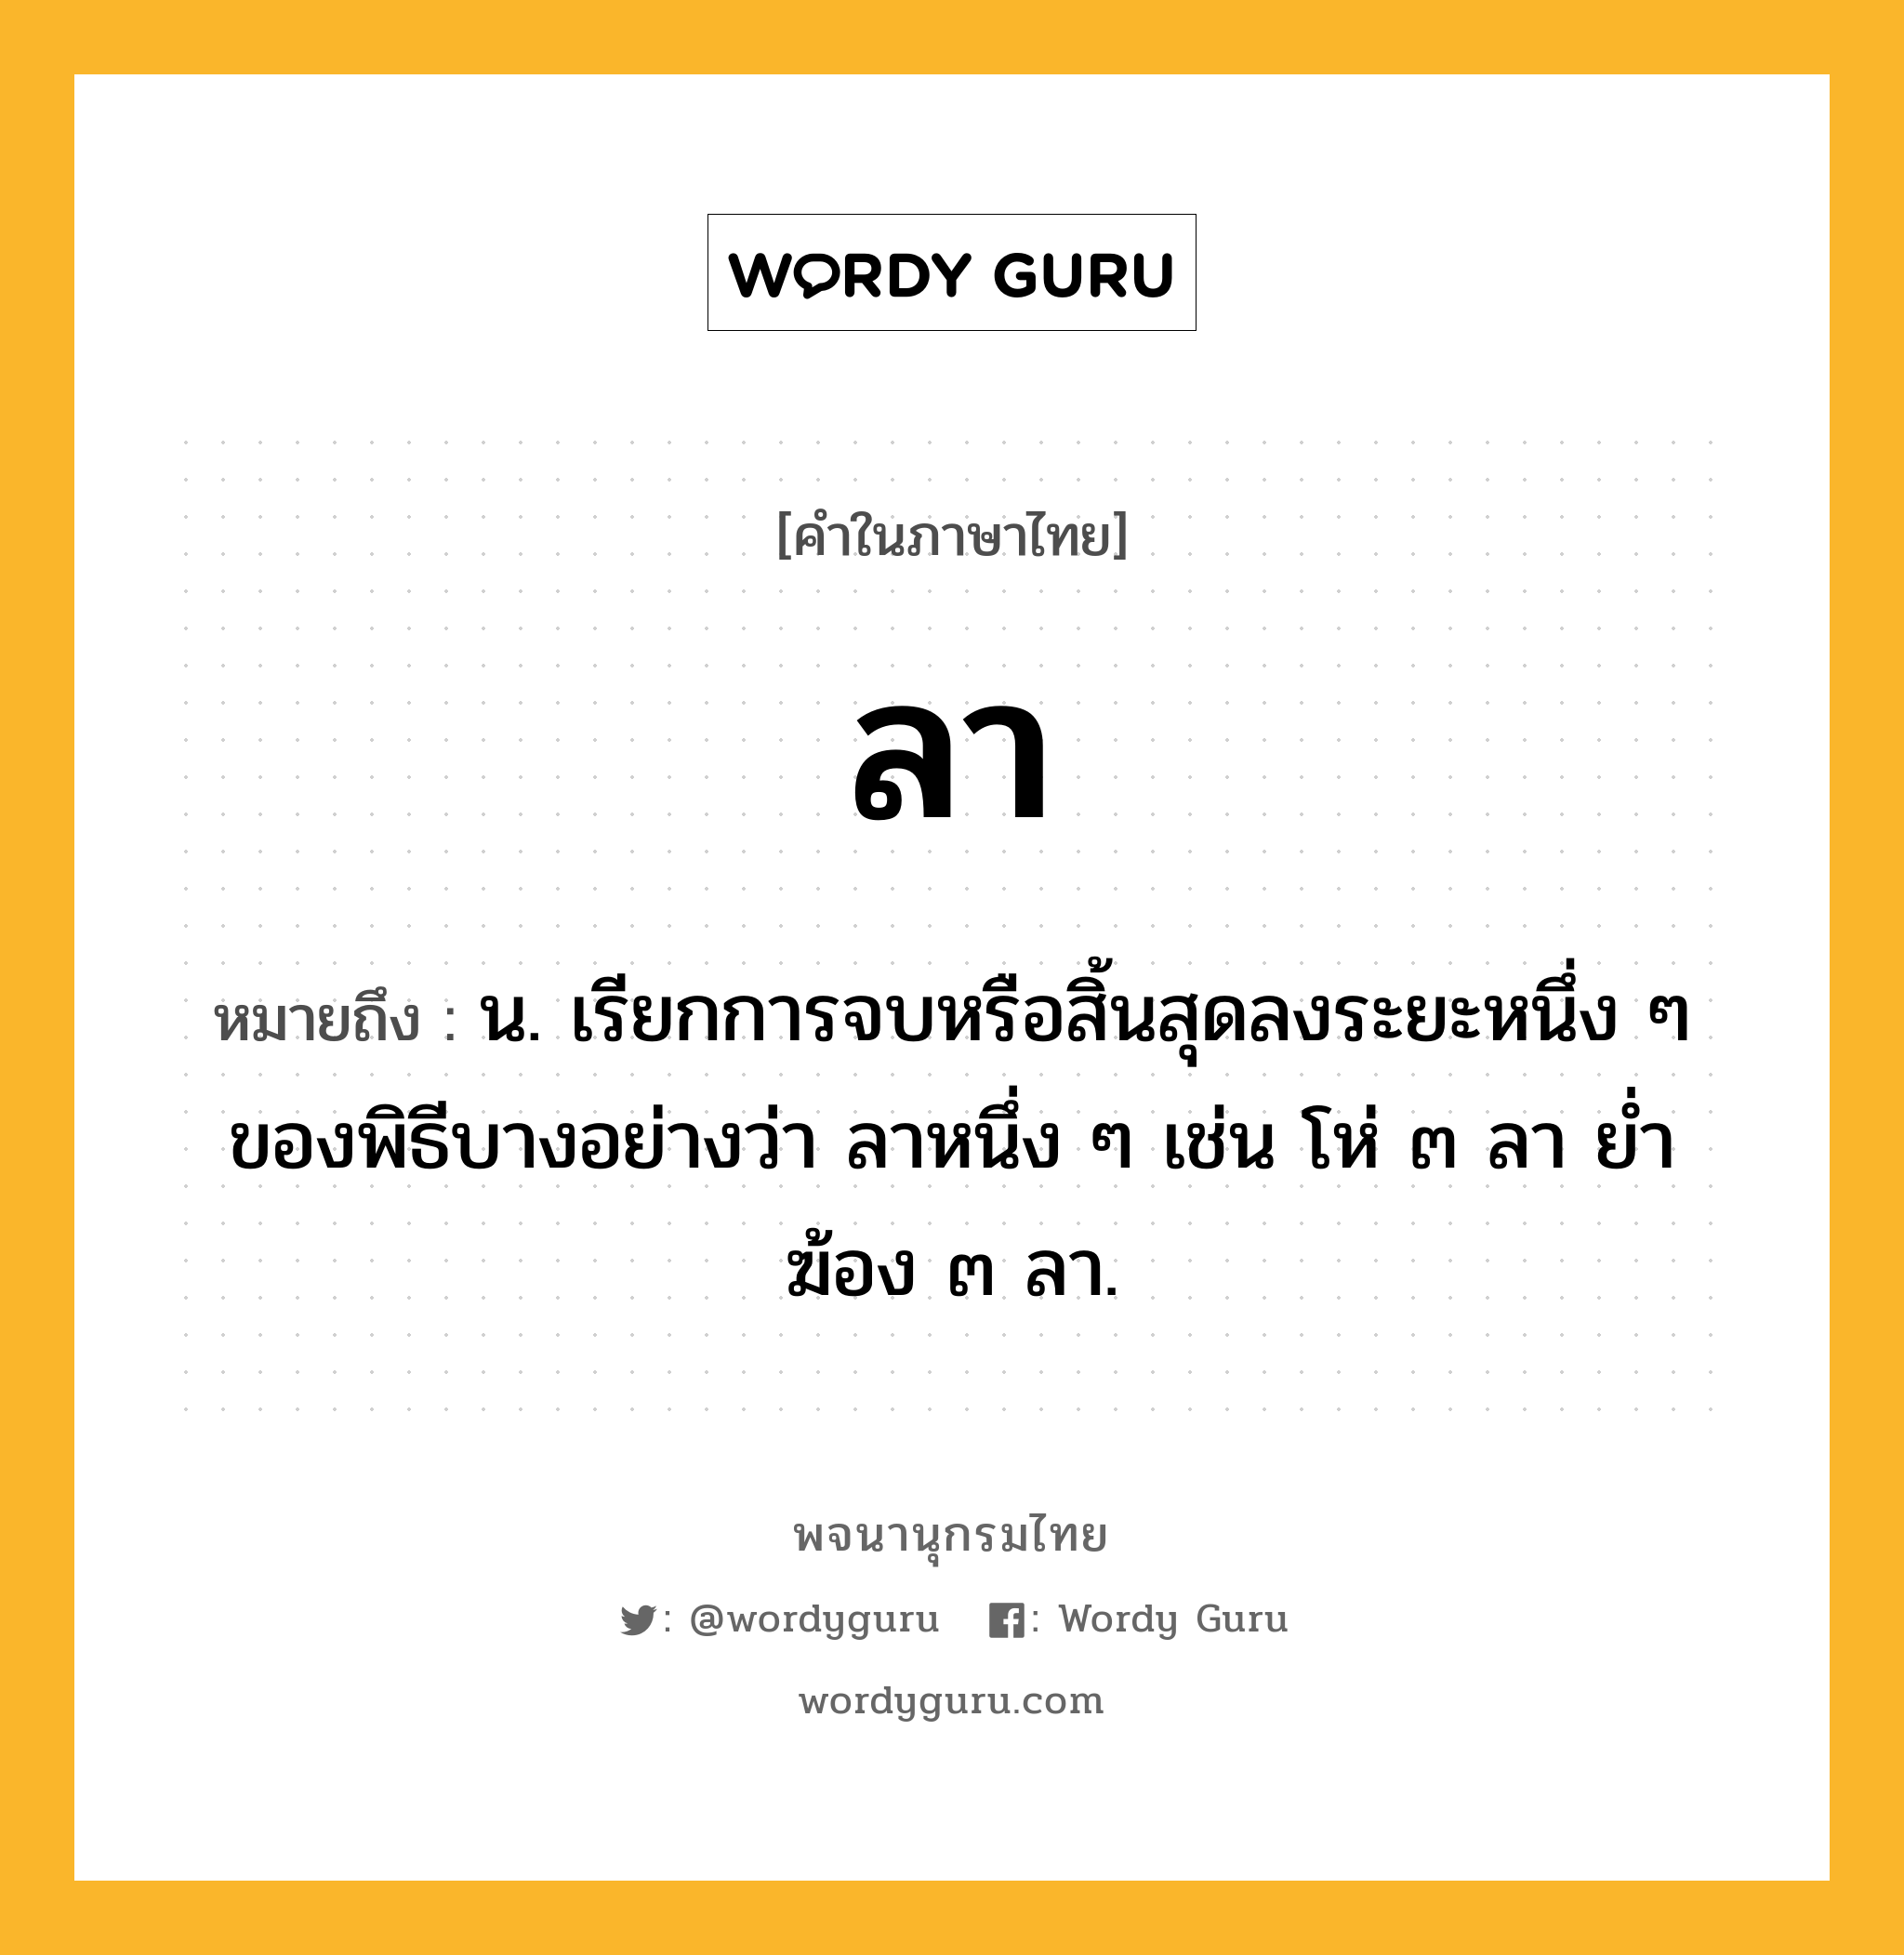 ลา ความหมาย หมายถึงอะไร?, คำในภาษาไทย ลา หมายถึง น. เรียกการจบหรือสิ้นสุดลงระยะหนึ่ง ๆ ของพิธีบางอย่างว่า ลาหนึ่ง ๆ เช่น โห่ ๓ ลา ยํ่าฆ้อง ๓ ลา.